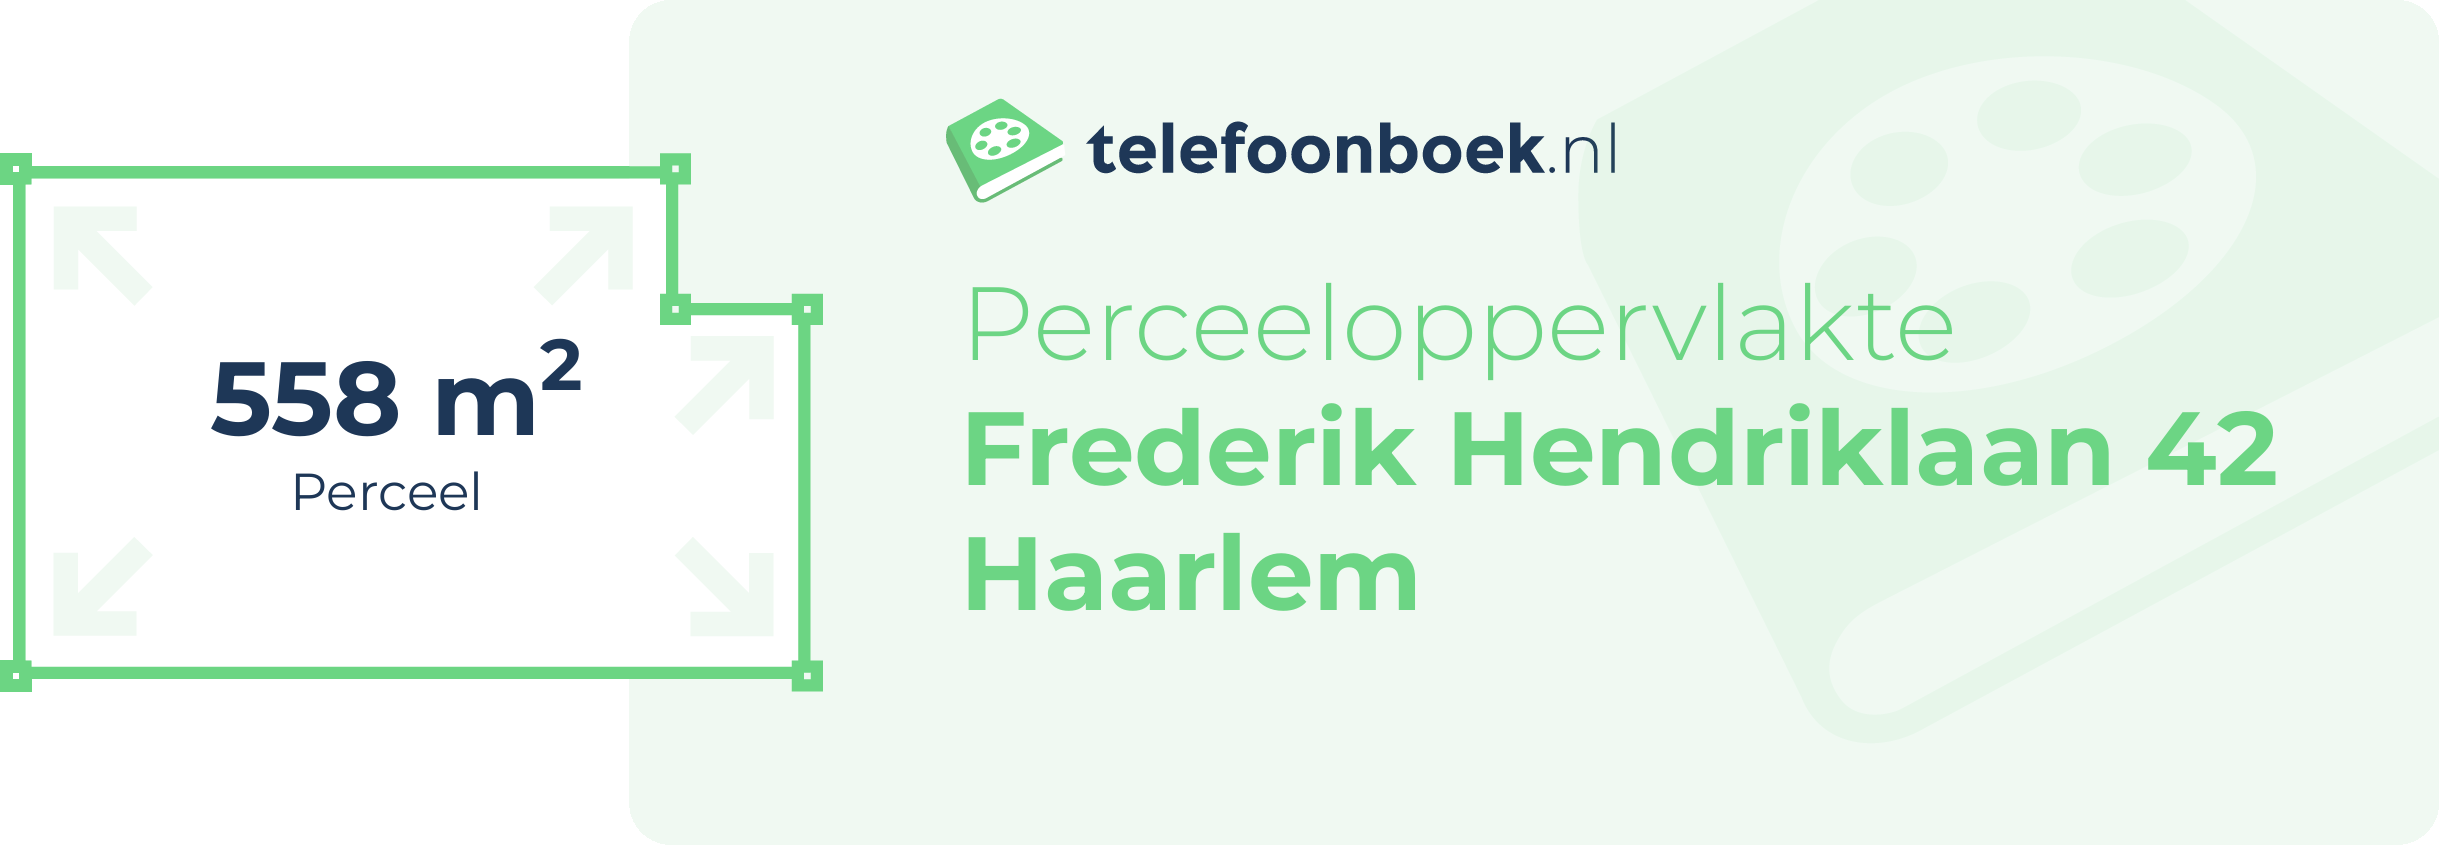 Perceeloppervlakte Frederik Hendriklaan 42 Haarlem